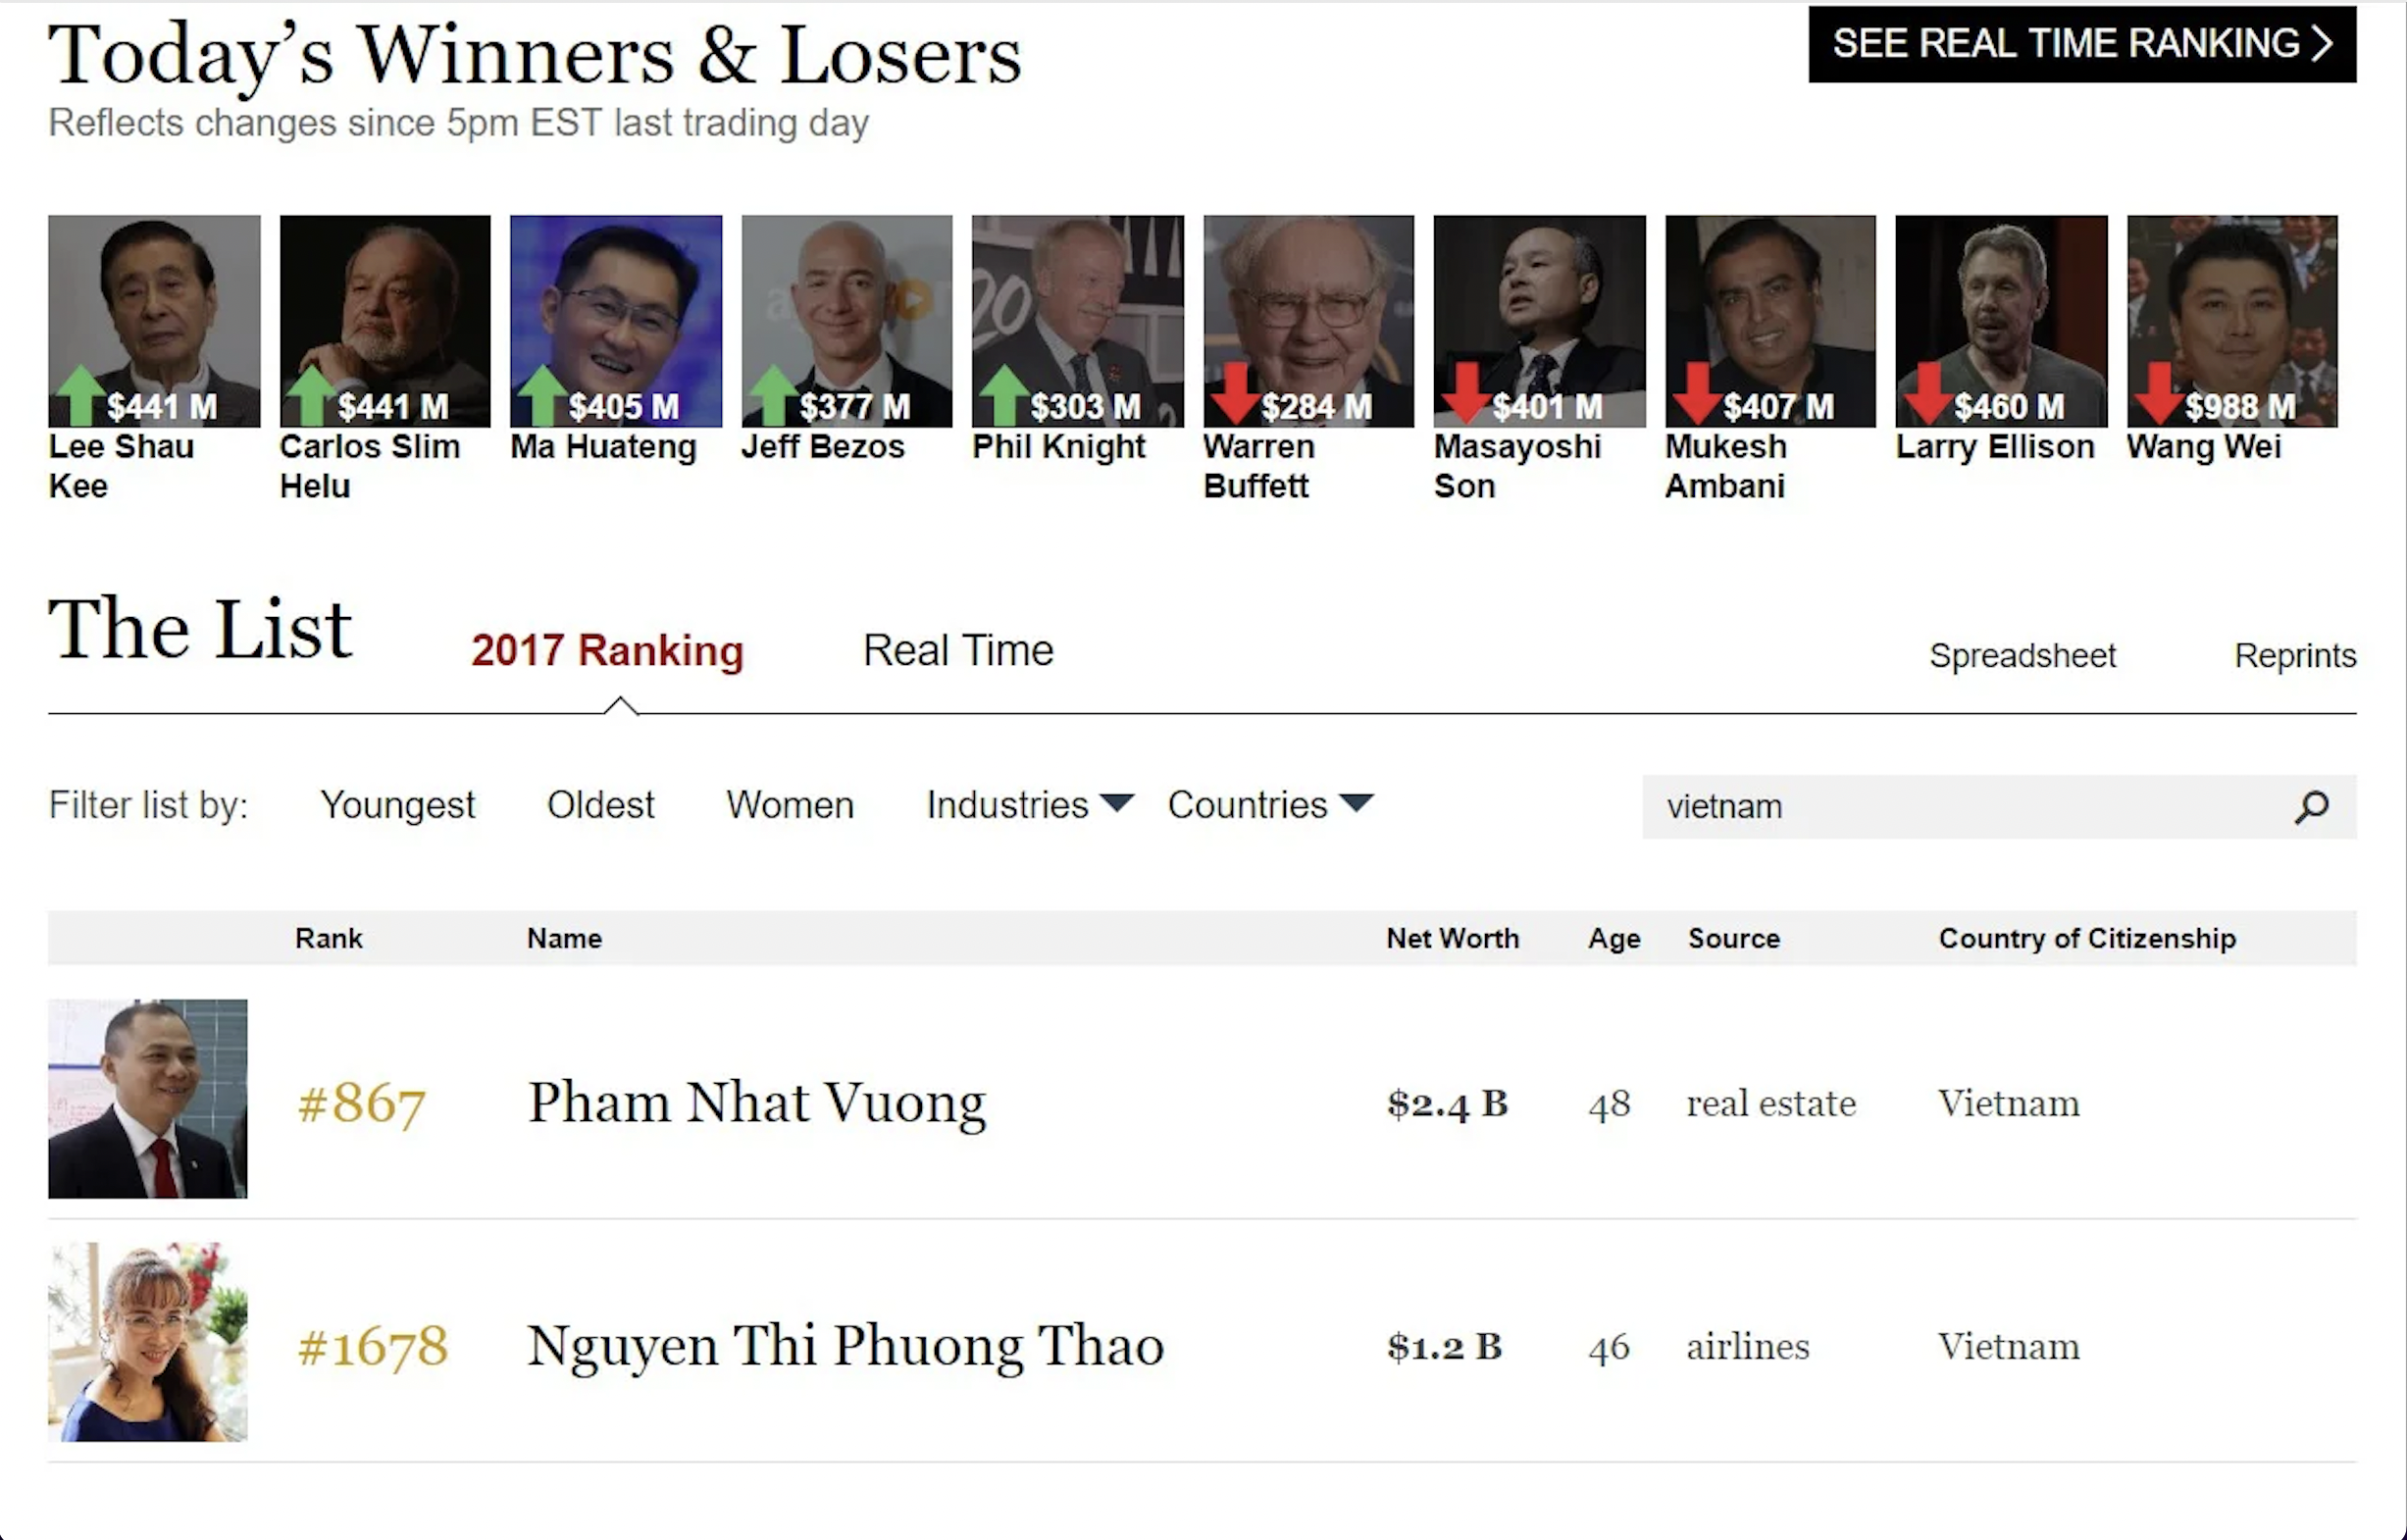 Danh sách tỉ phú Việt Nam năm 2017 của tạp chí Forbes. Ảnh chụp màn hình